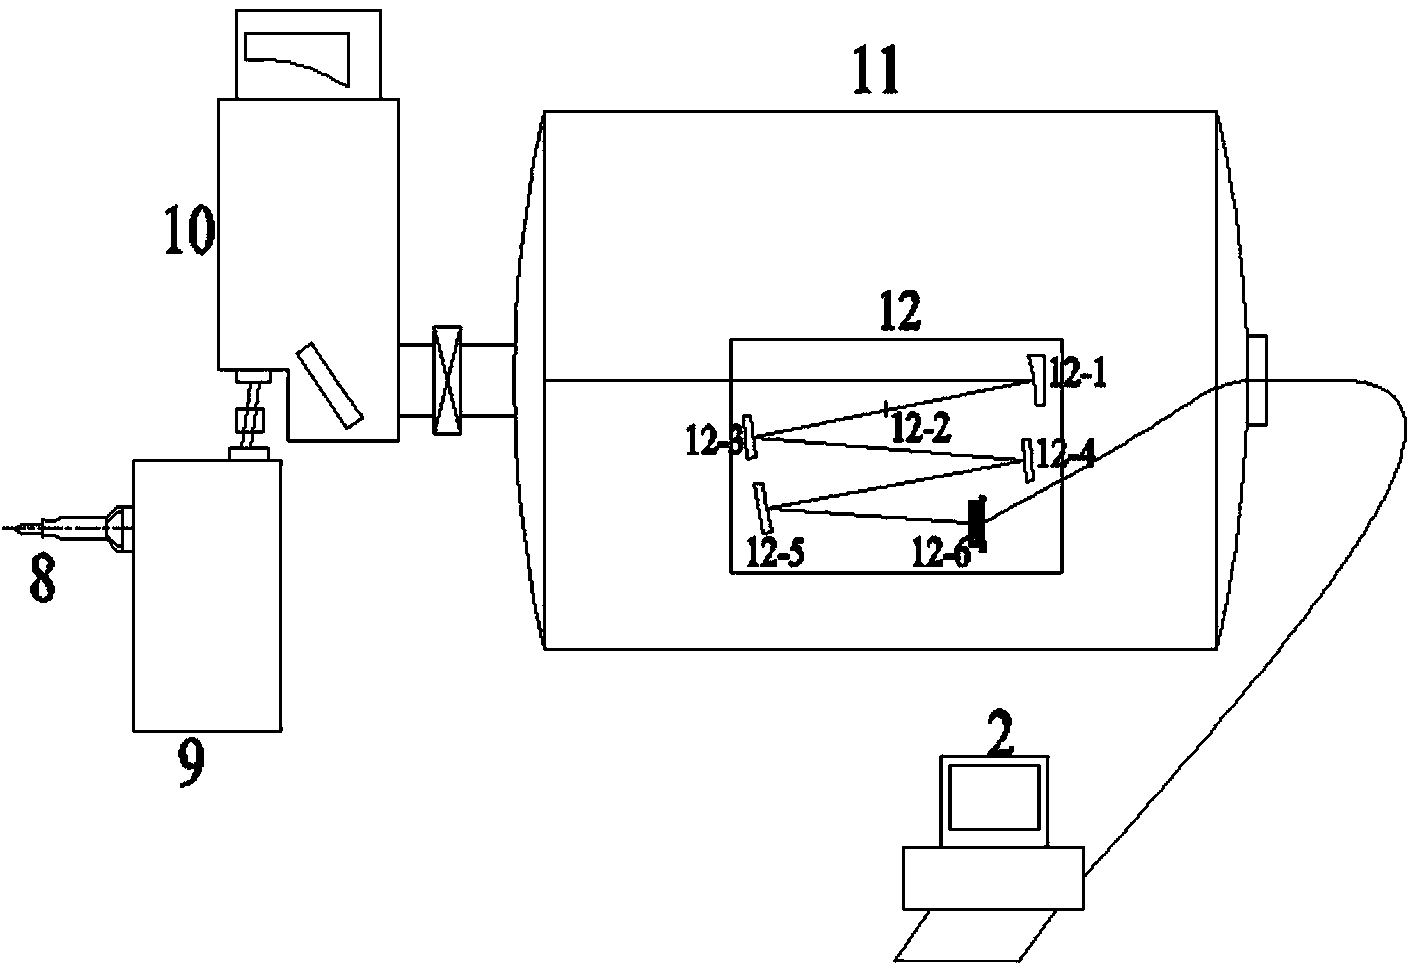 Adjusting method for vacuum ultraviolet plane grating dispersion spectrograph